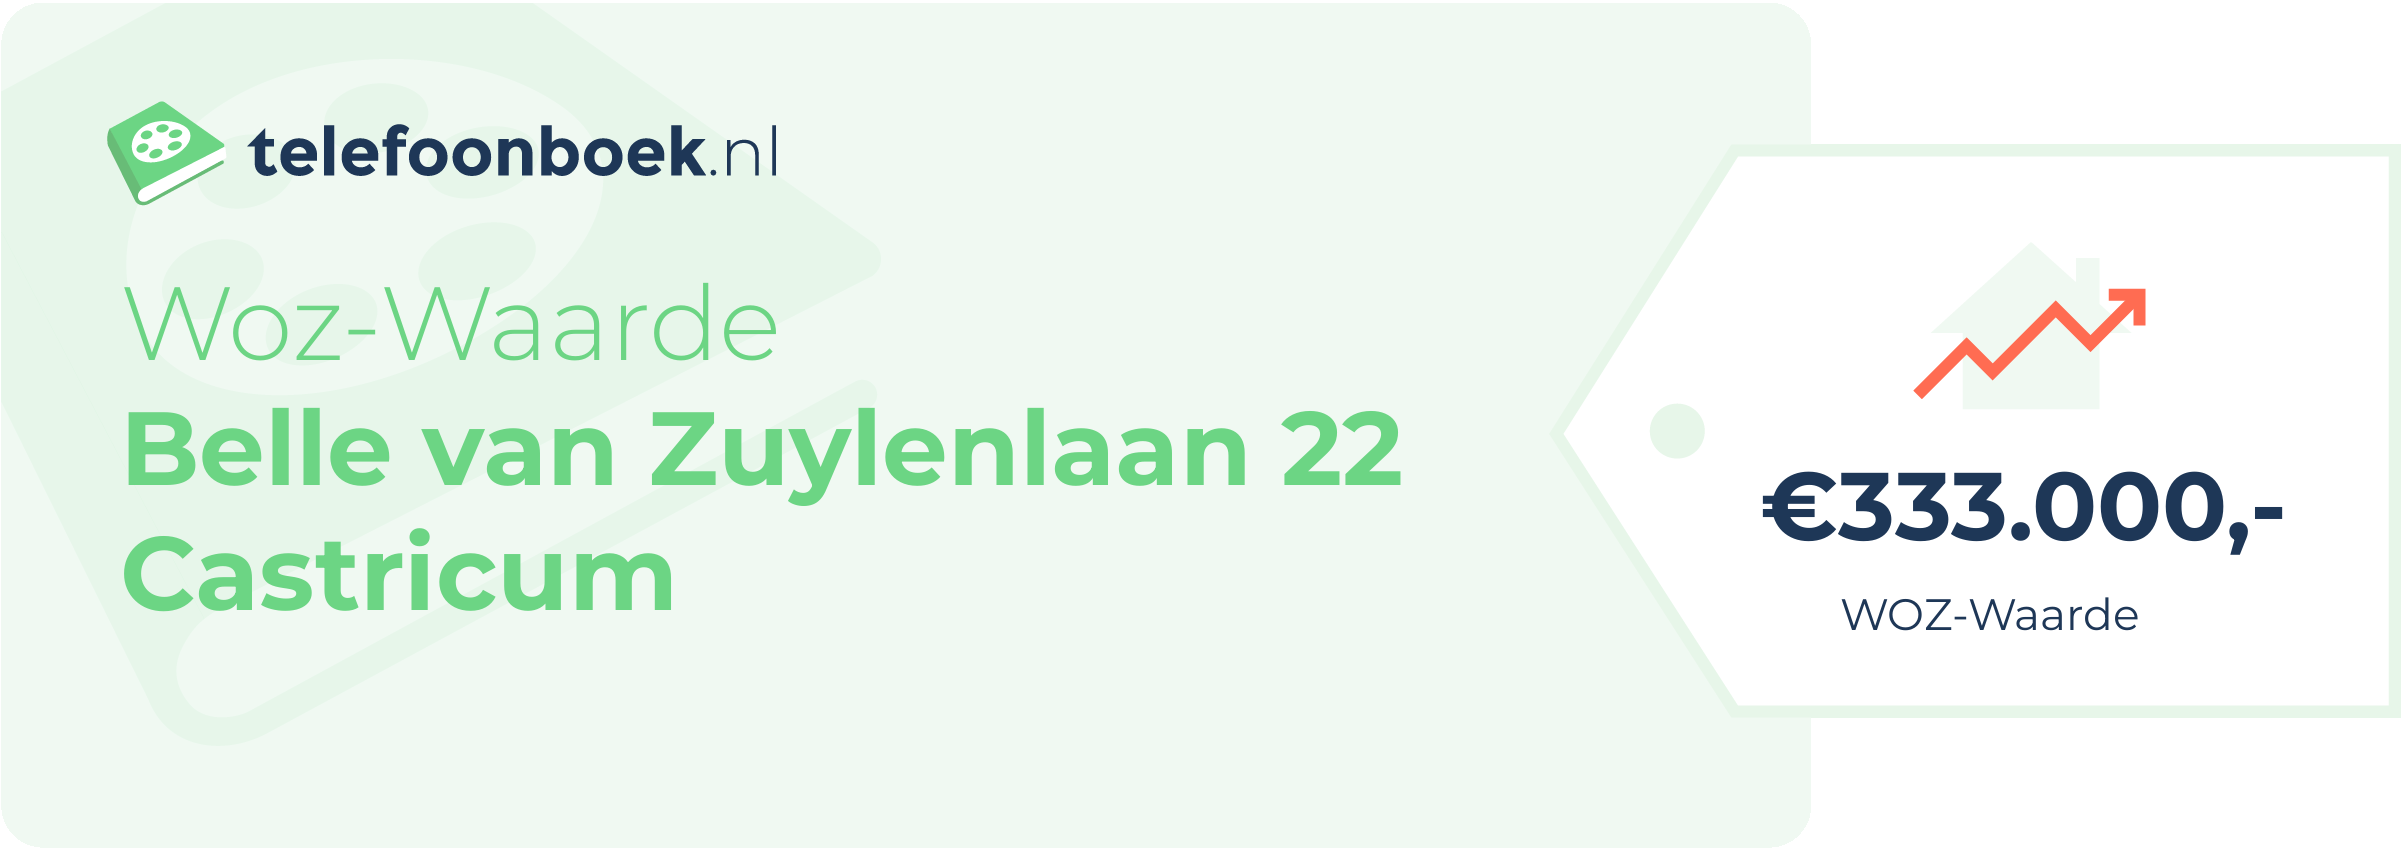 WOZ-waarde Belle Van Zuylenlaan 22 Castricum